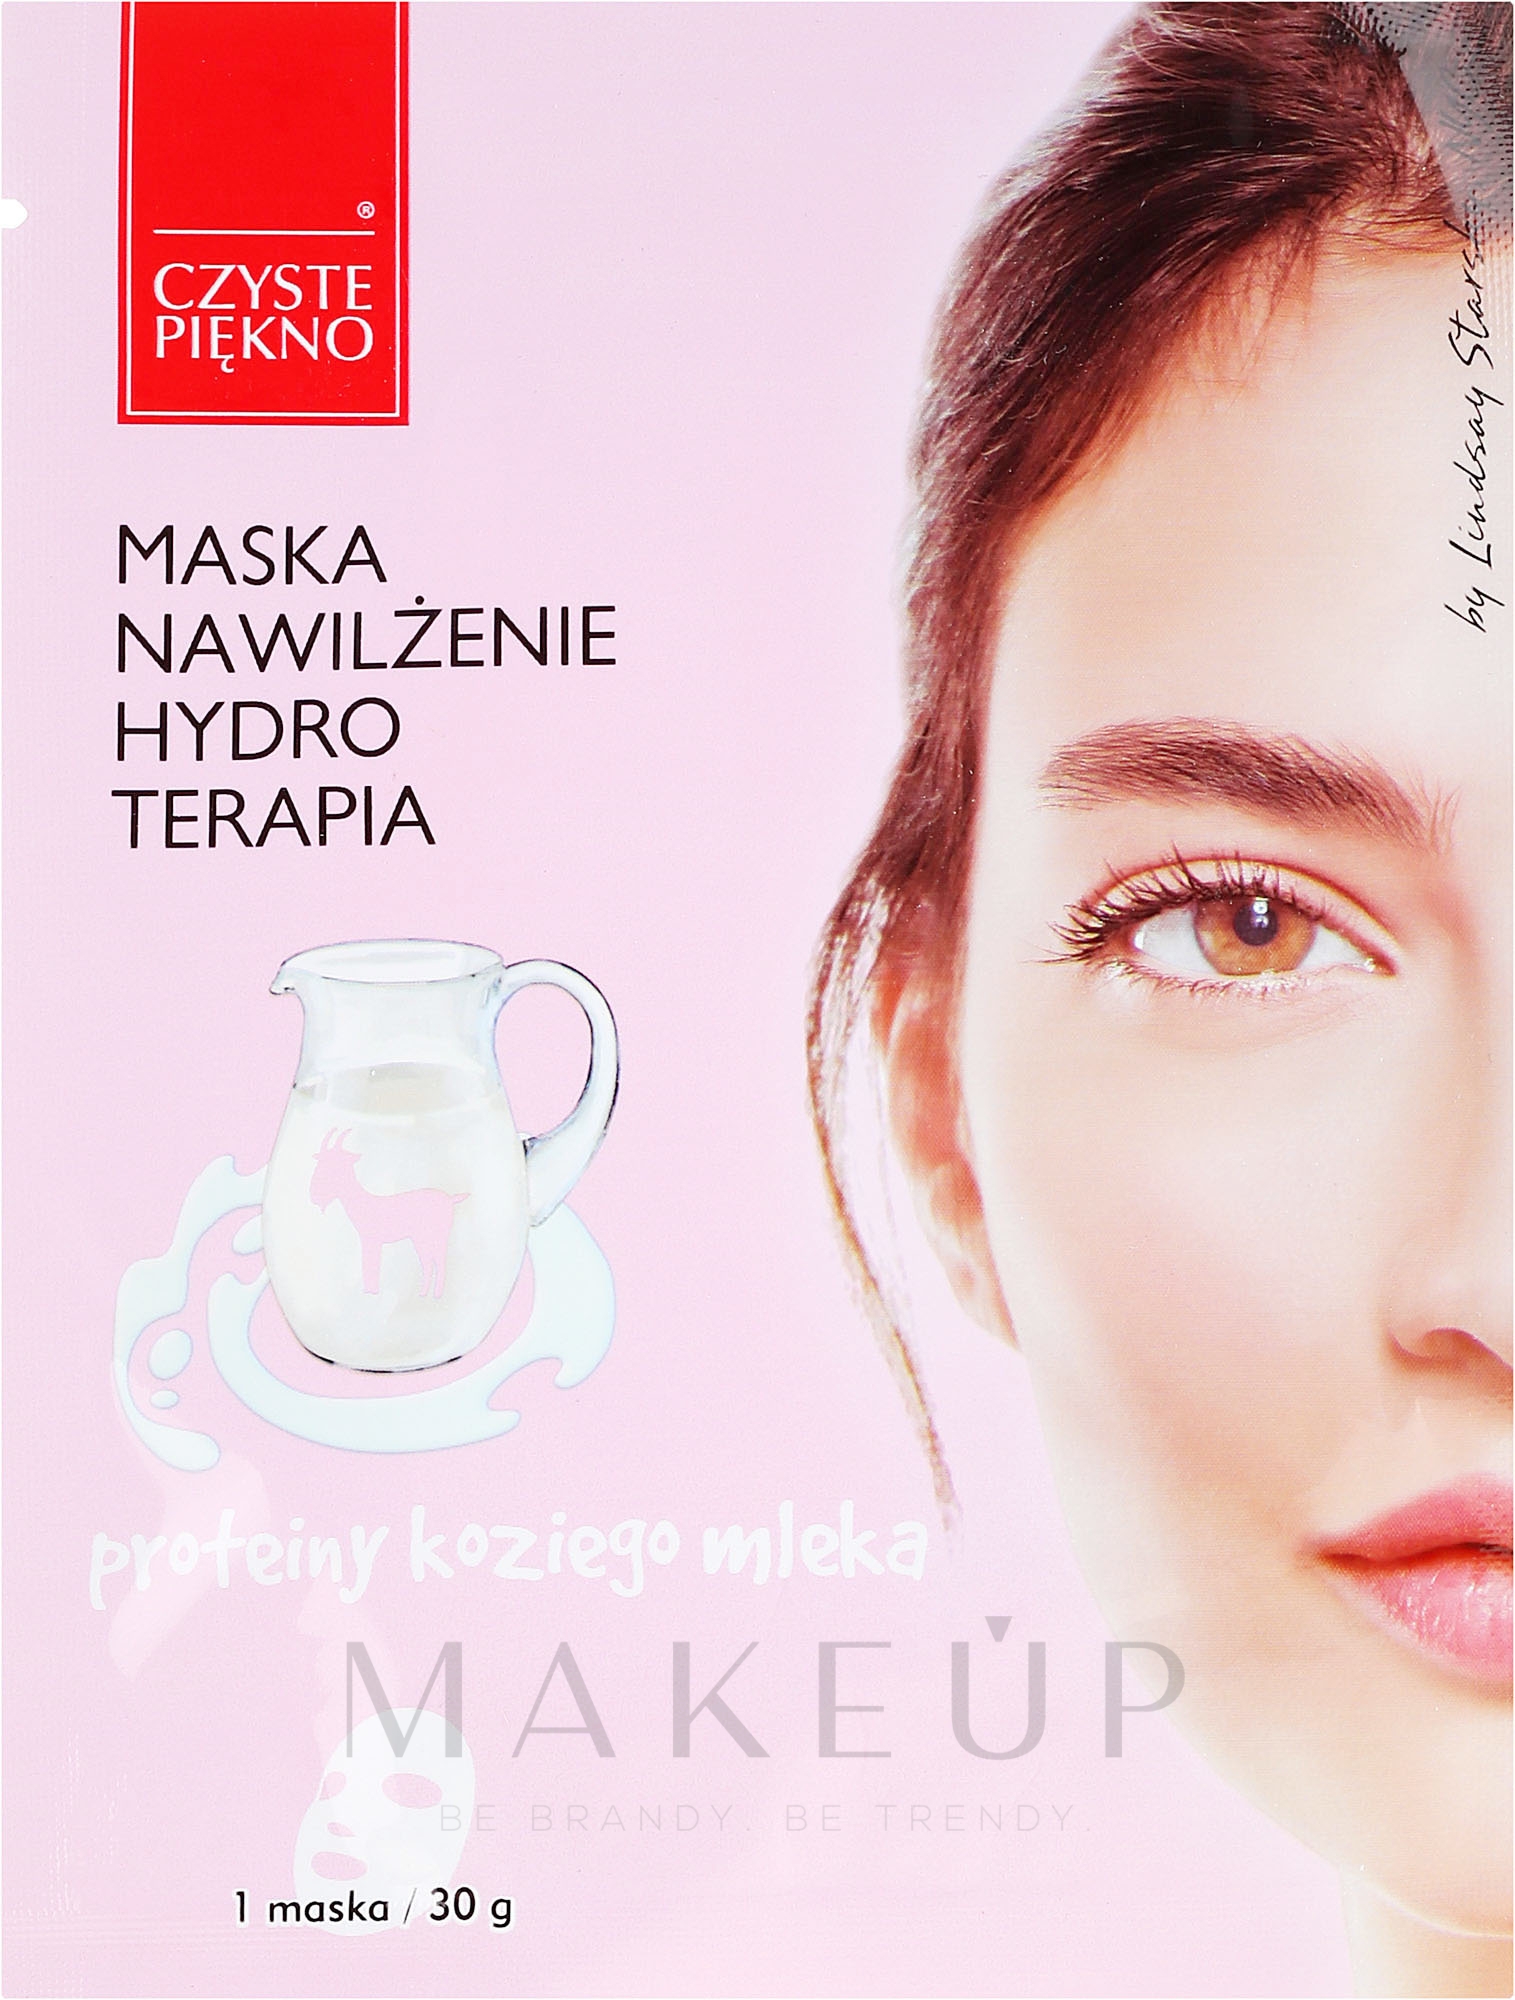 Feuchtigkeitsspendende Gesichtsmaske mit Ziegenmilch - Czyste Piekno Hydro Therapia Face Mask — Foto 30 g